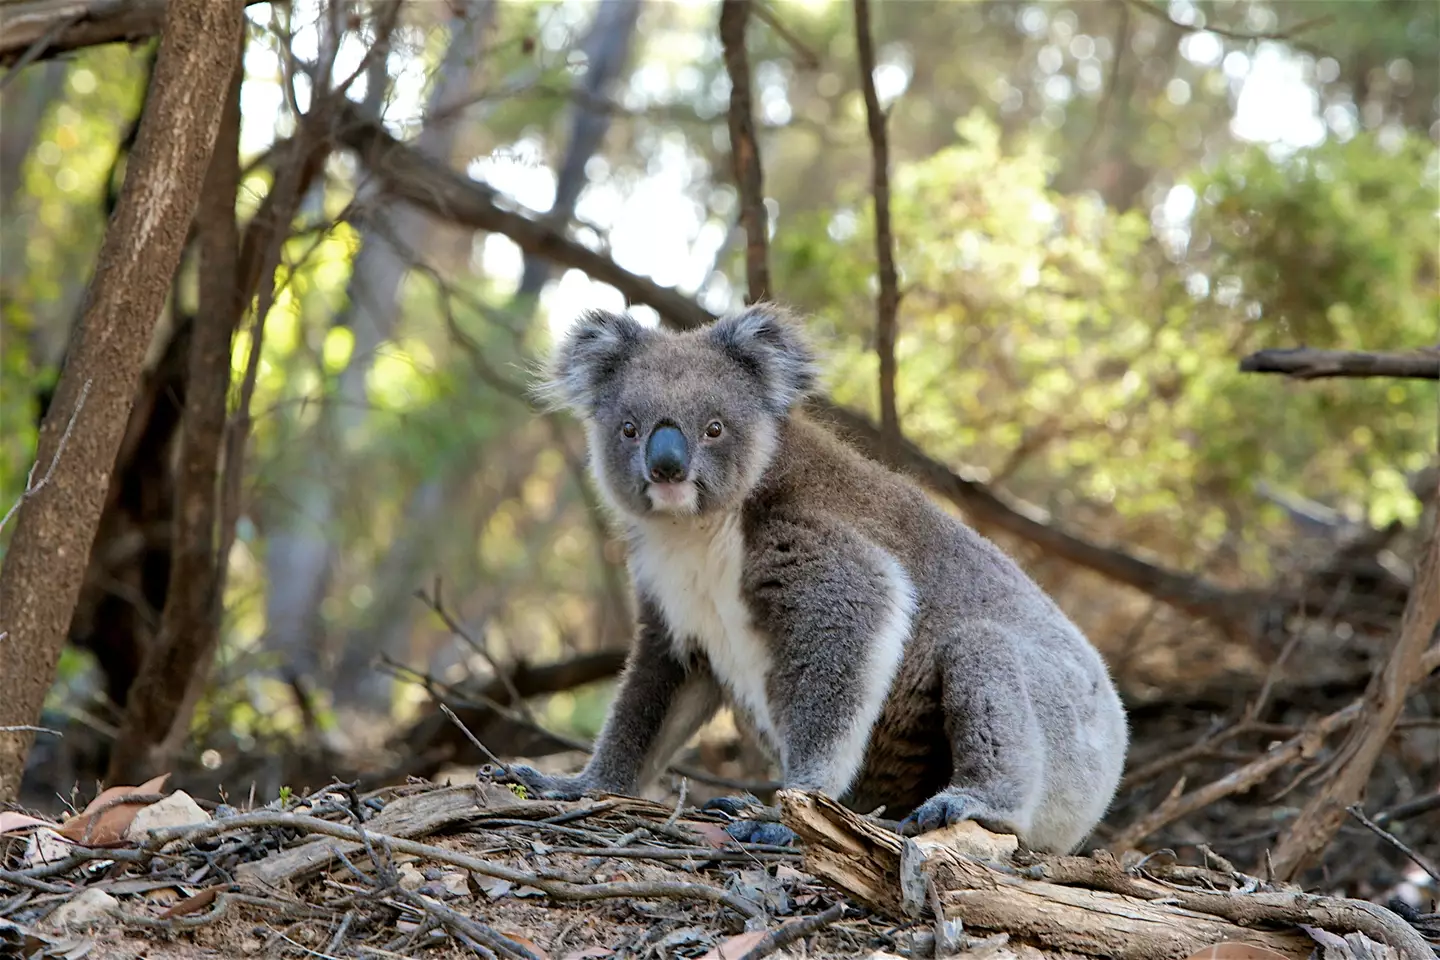 Koalas were declared 'endangered' last year.